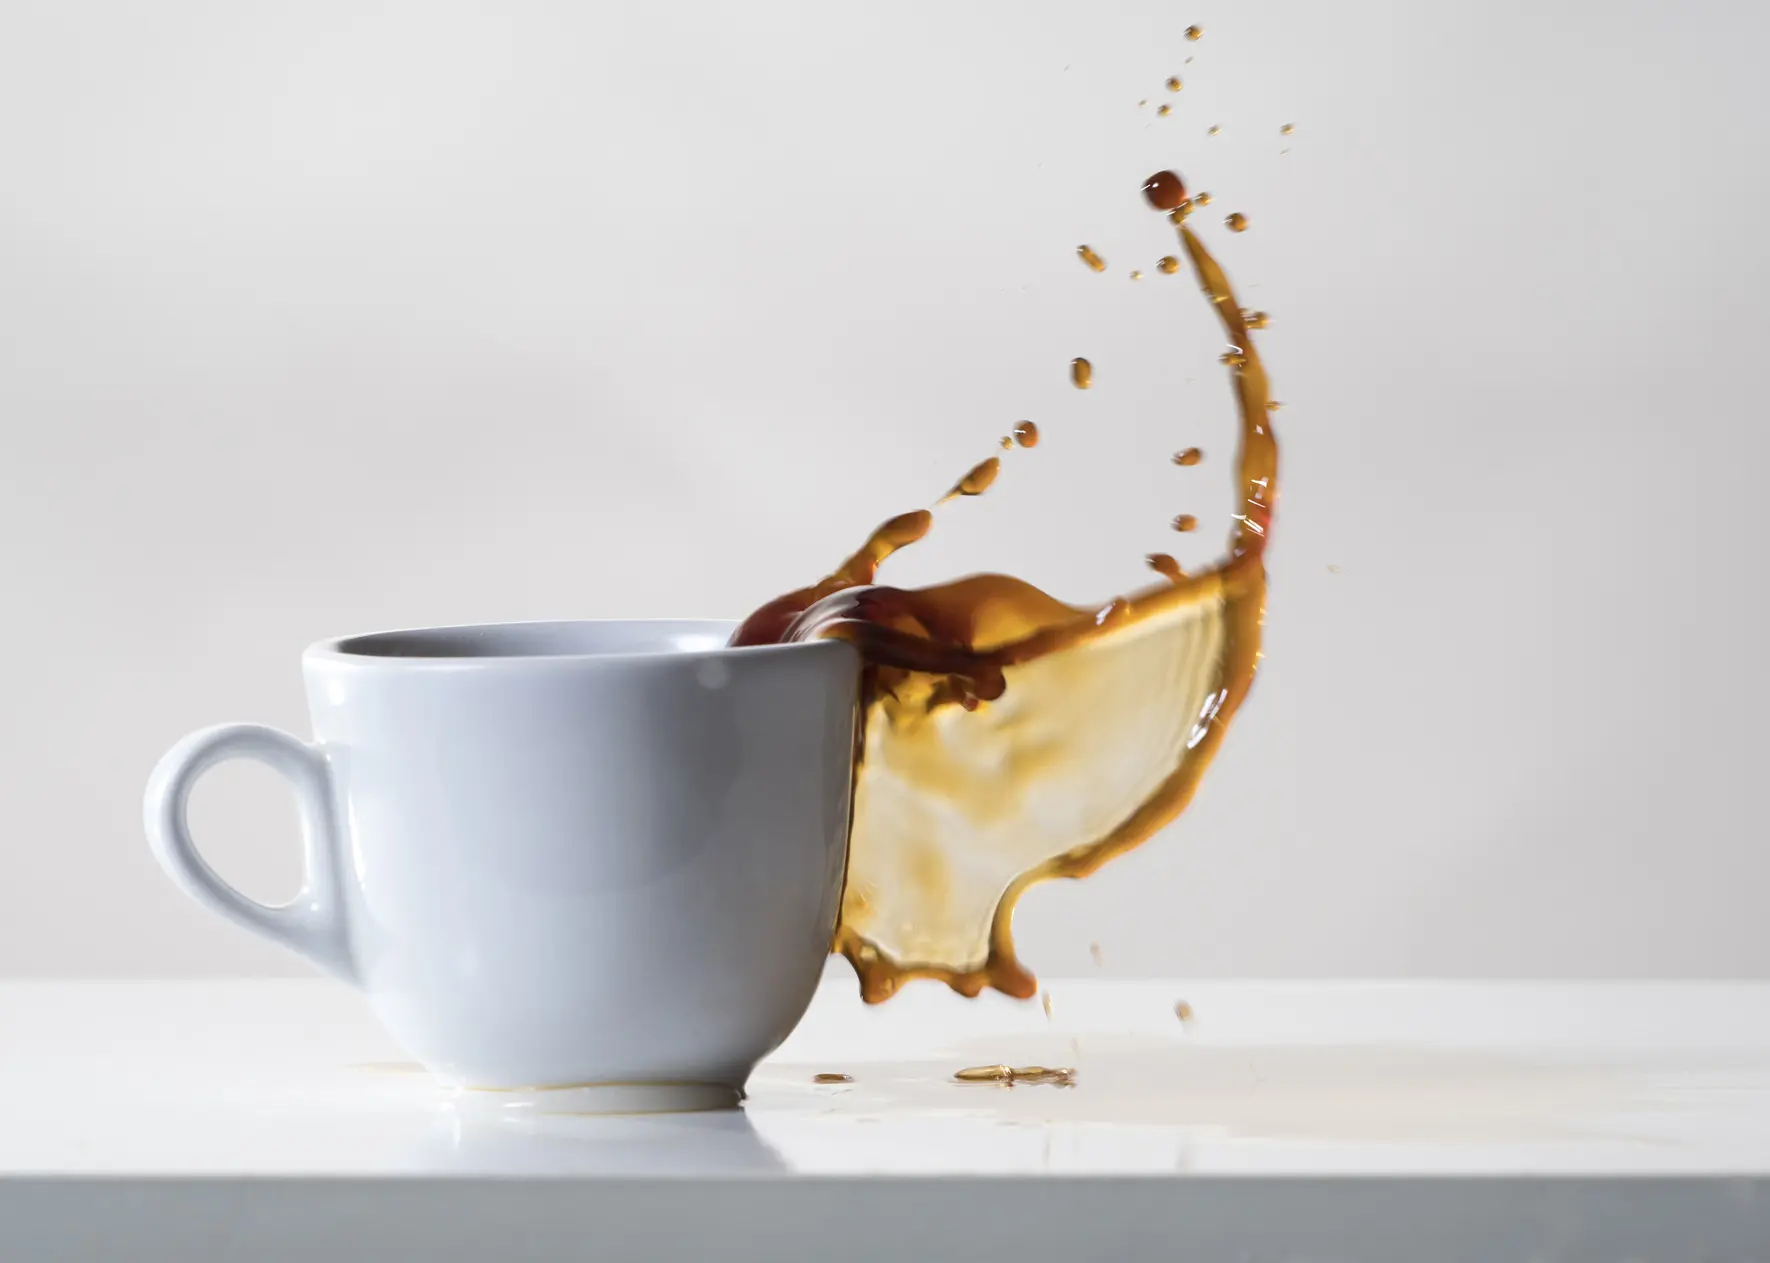 como sacar manchas de cafe con lavavajillas - Cómo se quitan las manchas de café en ropa blanca